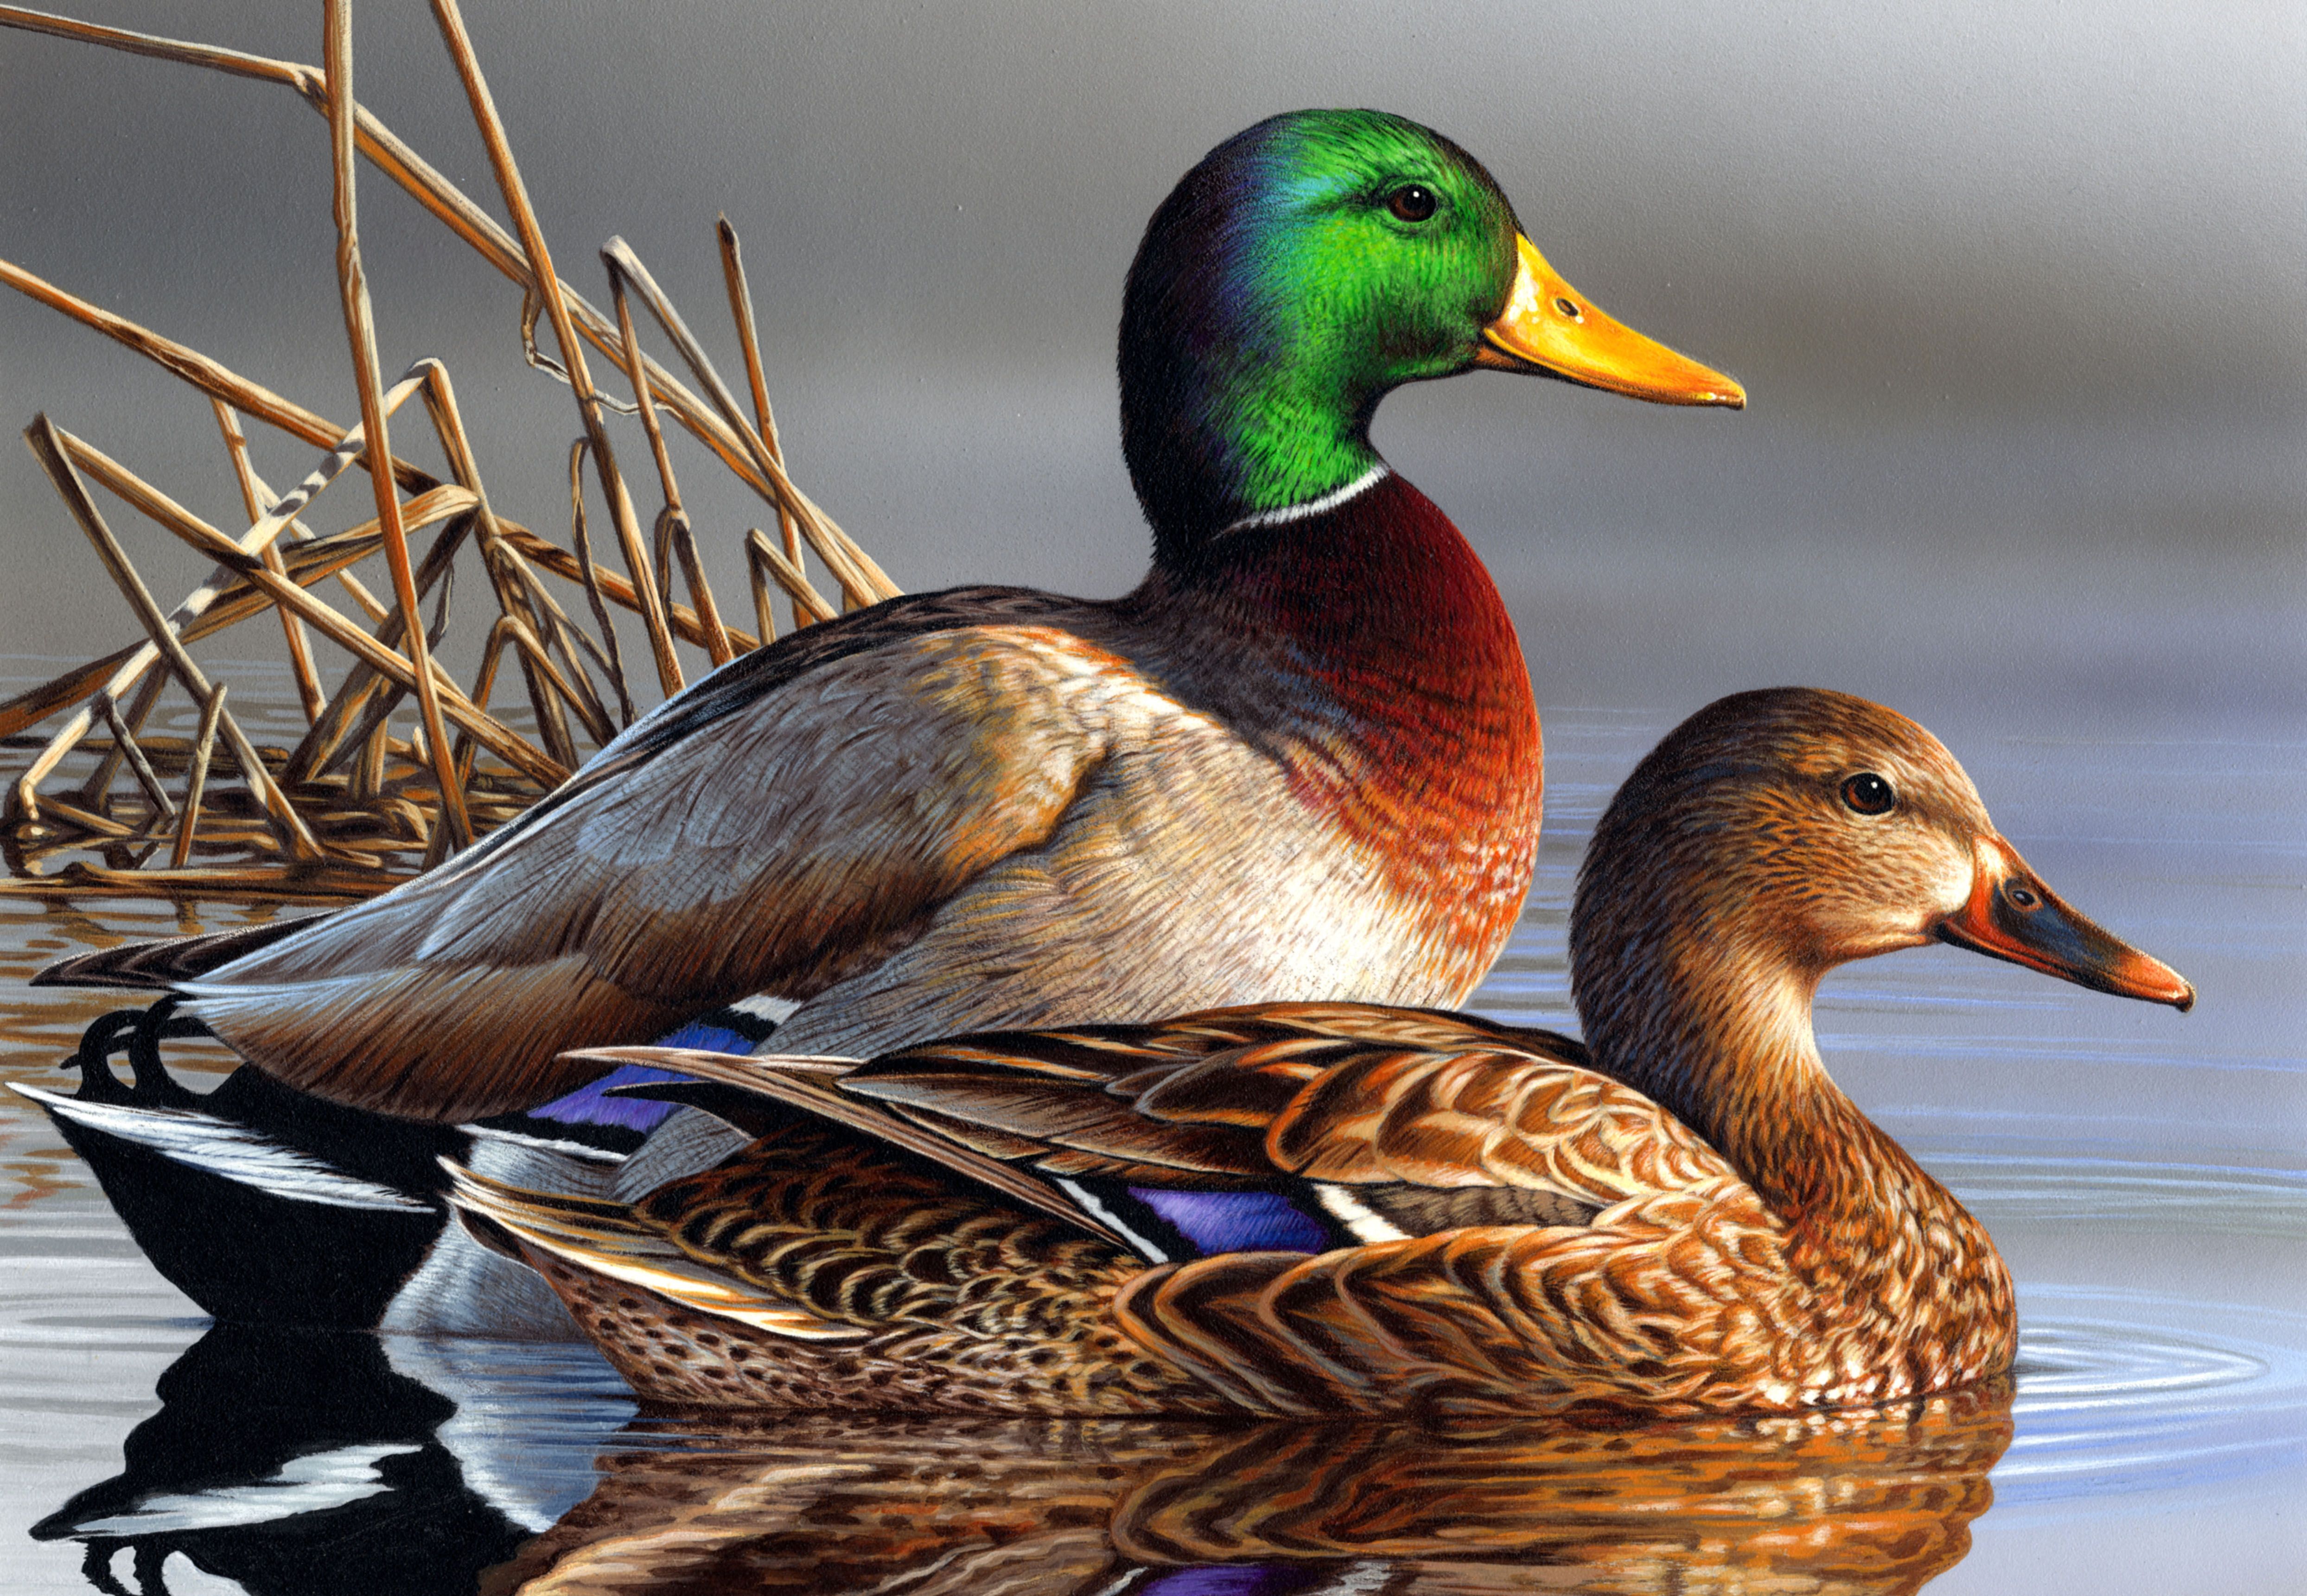 Mallard ducks | BIRD PICS | Pinterest | Mallard, Bird and Animal